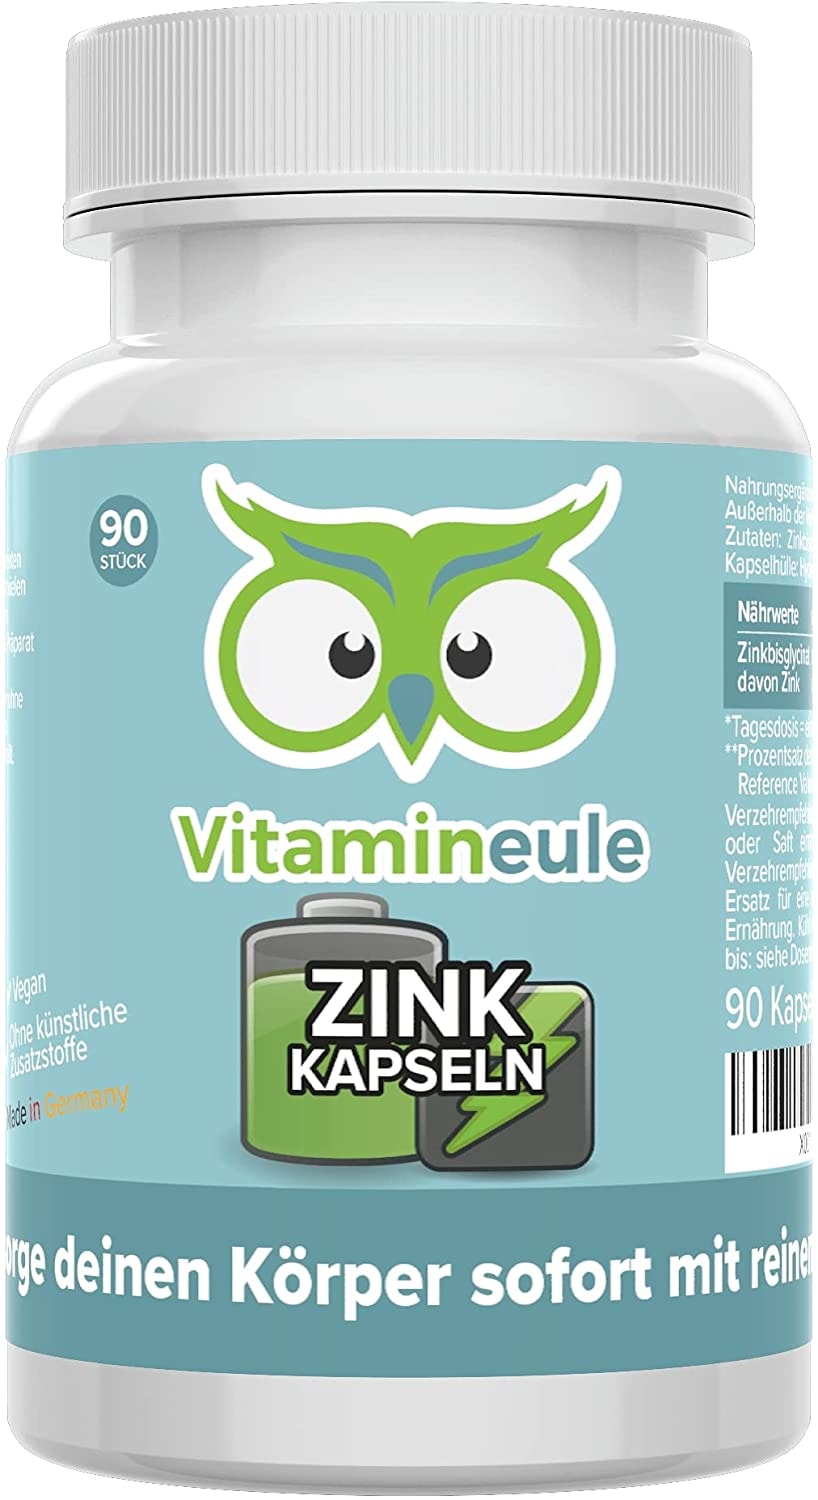 Vitamineule® Zink Kapseln - 25 mg - hochdosiert & vegan - Zinkbisglycinat ohne künstliche Zusätze - kleine Kapseln statt große Tabletten - Qualität aus Deutschland